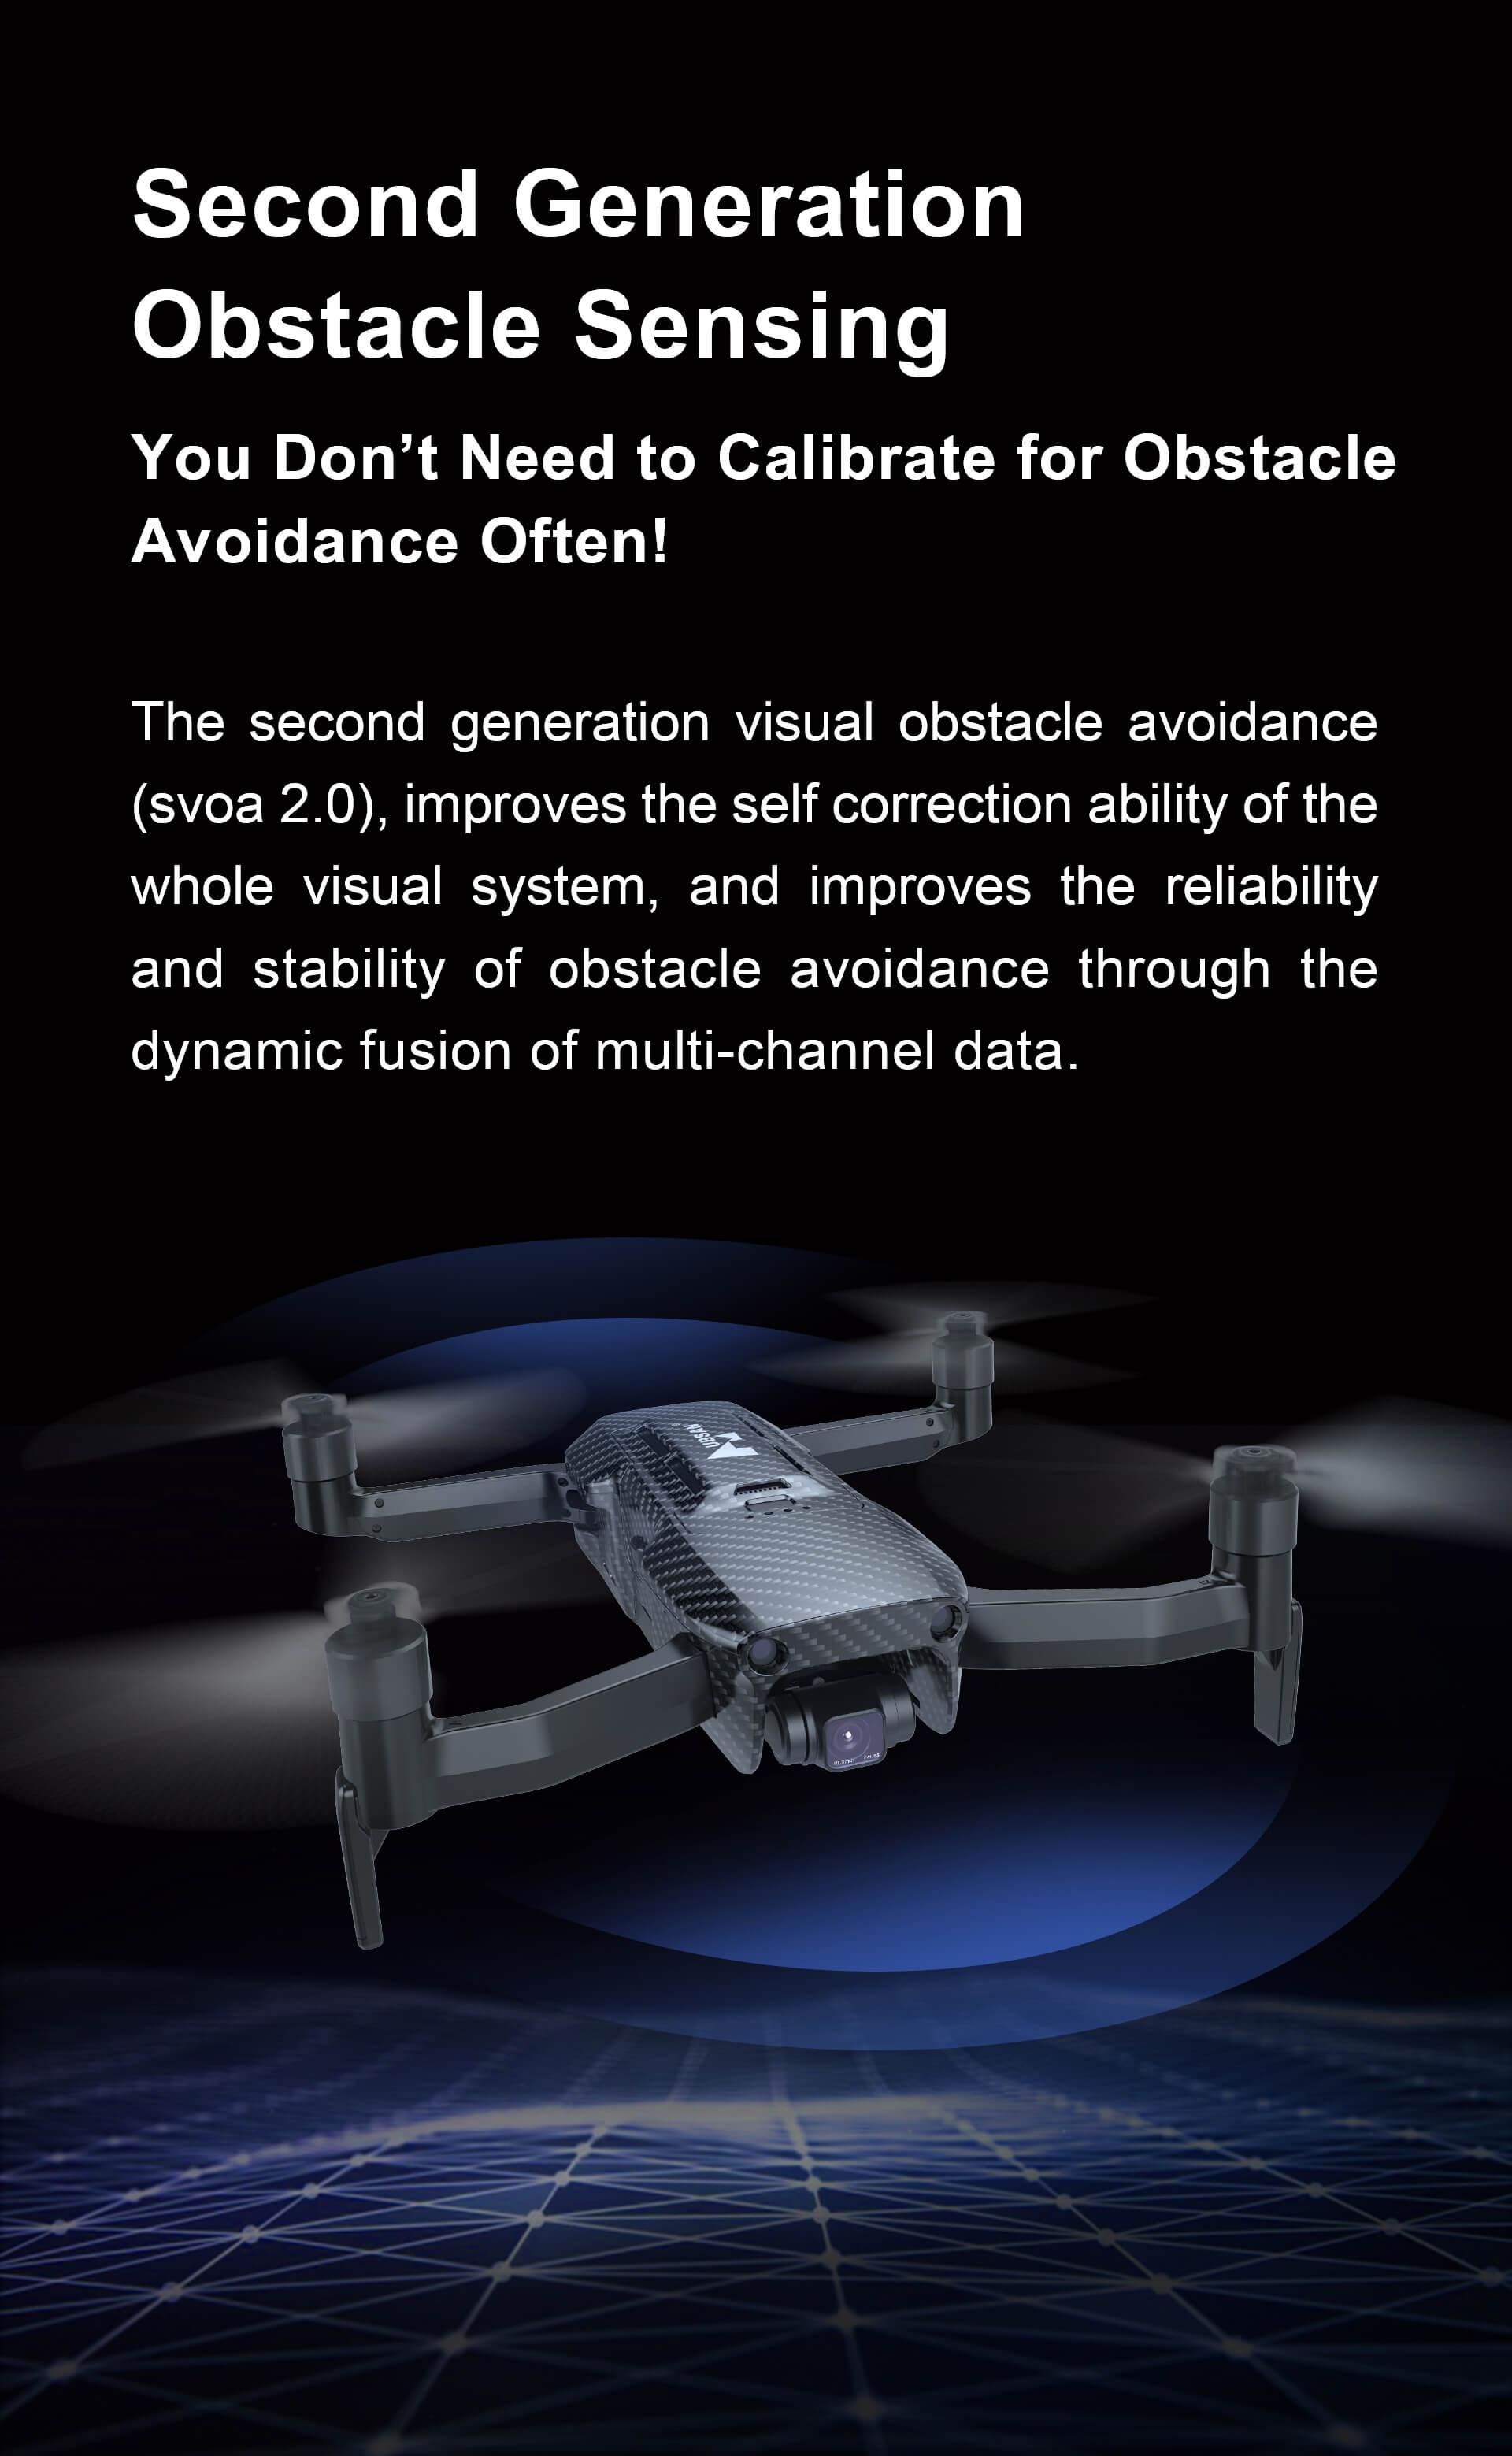 Hubsan ACE Pro Drone avec évitement d'obstacles, caméra 4K avec cardan à 3  axes, portée de transmission de 10 km, temps de vol de 35 minutes, 2 piles  avec sac de transport 